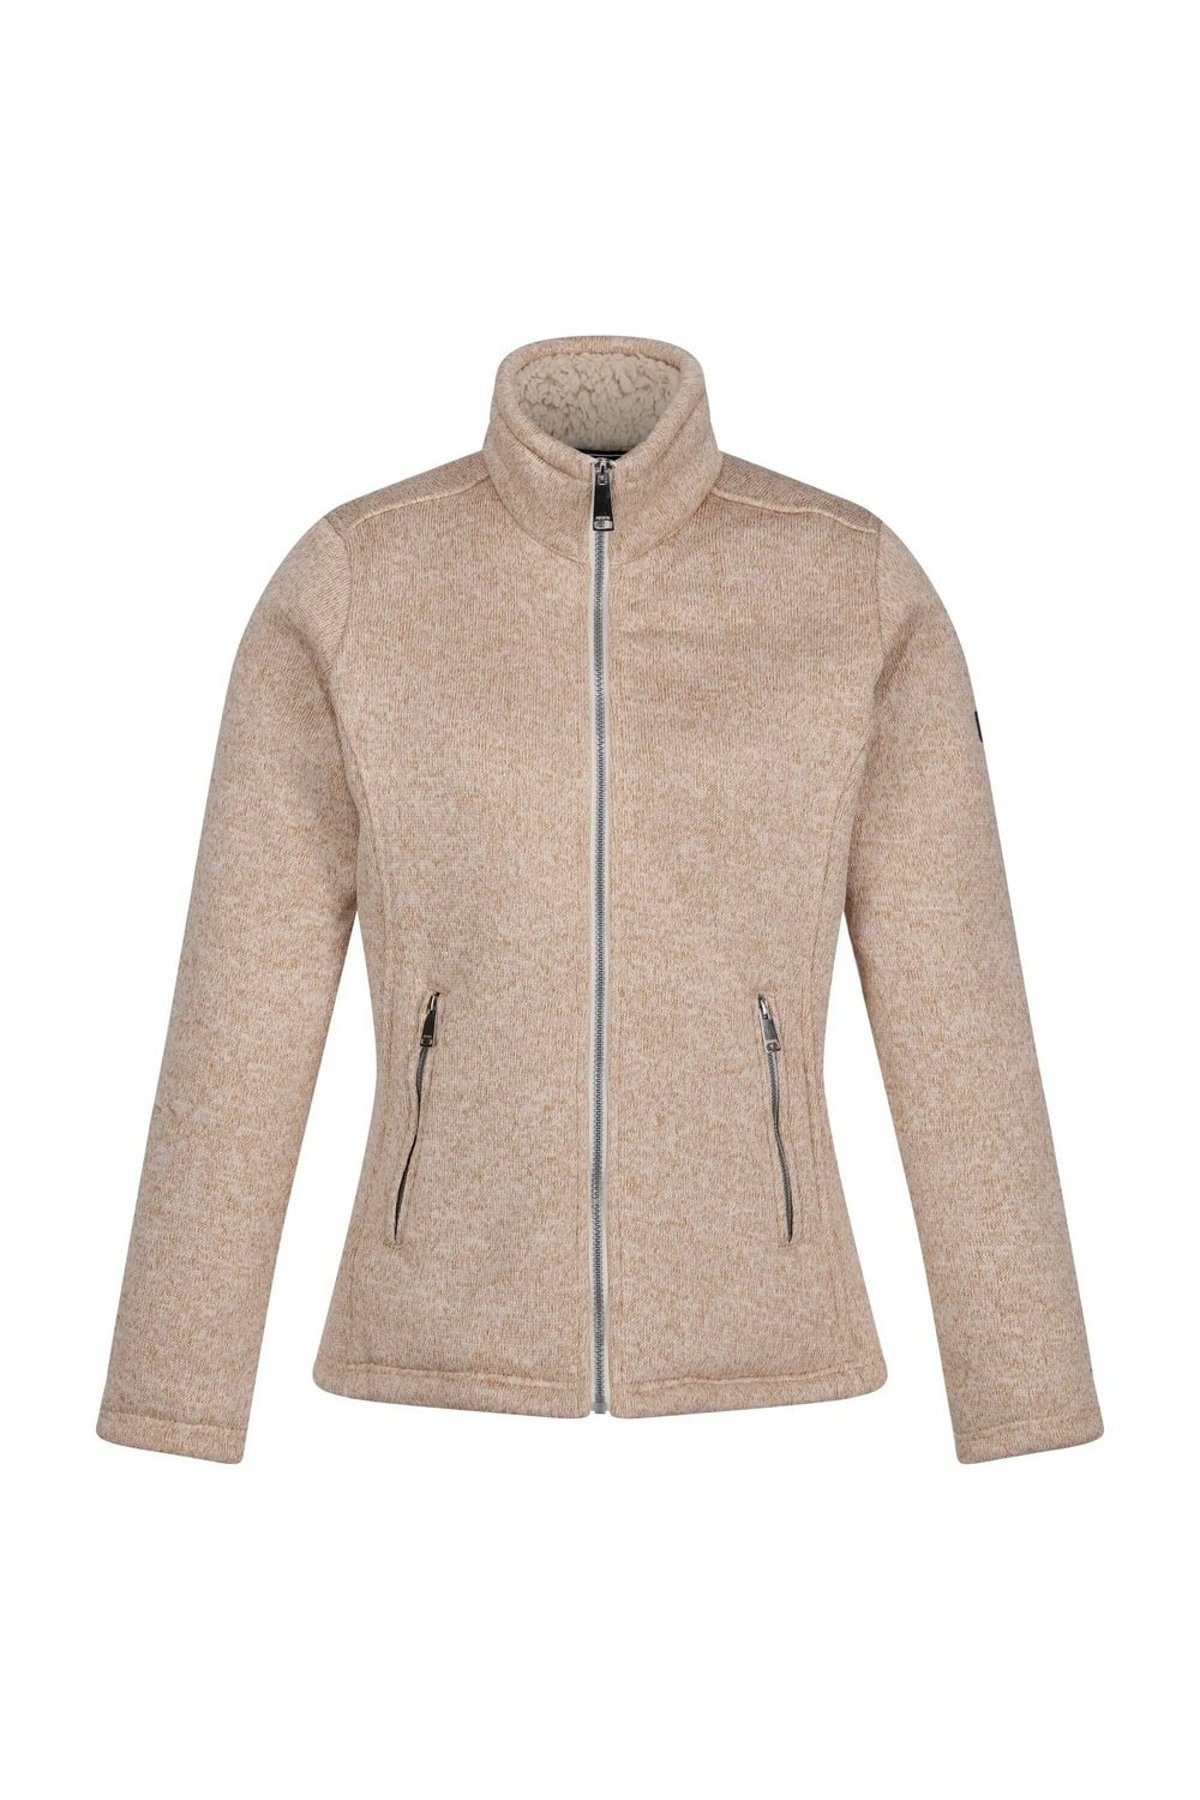 Fleece Jacket with High Collar - Light beige - Ladies